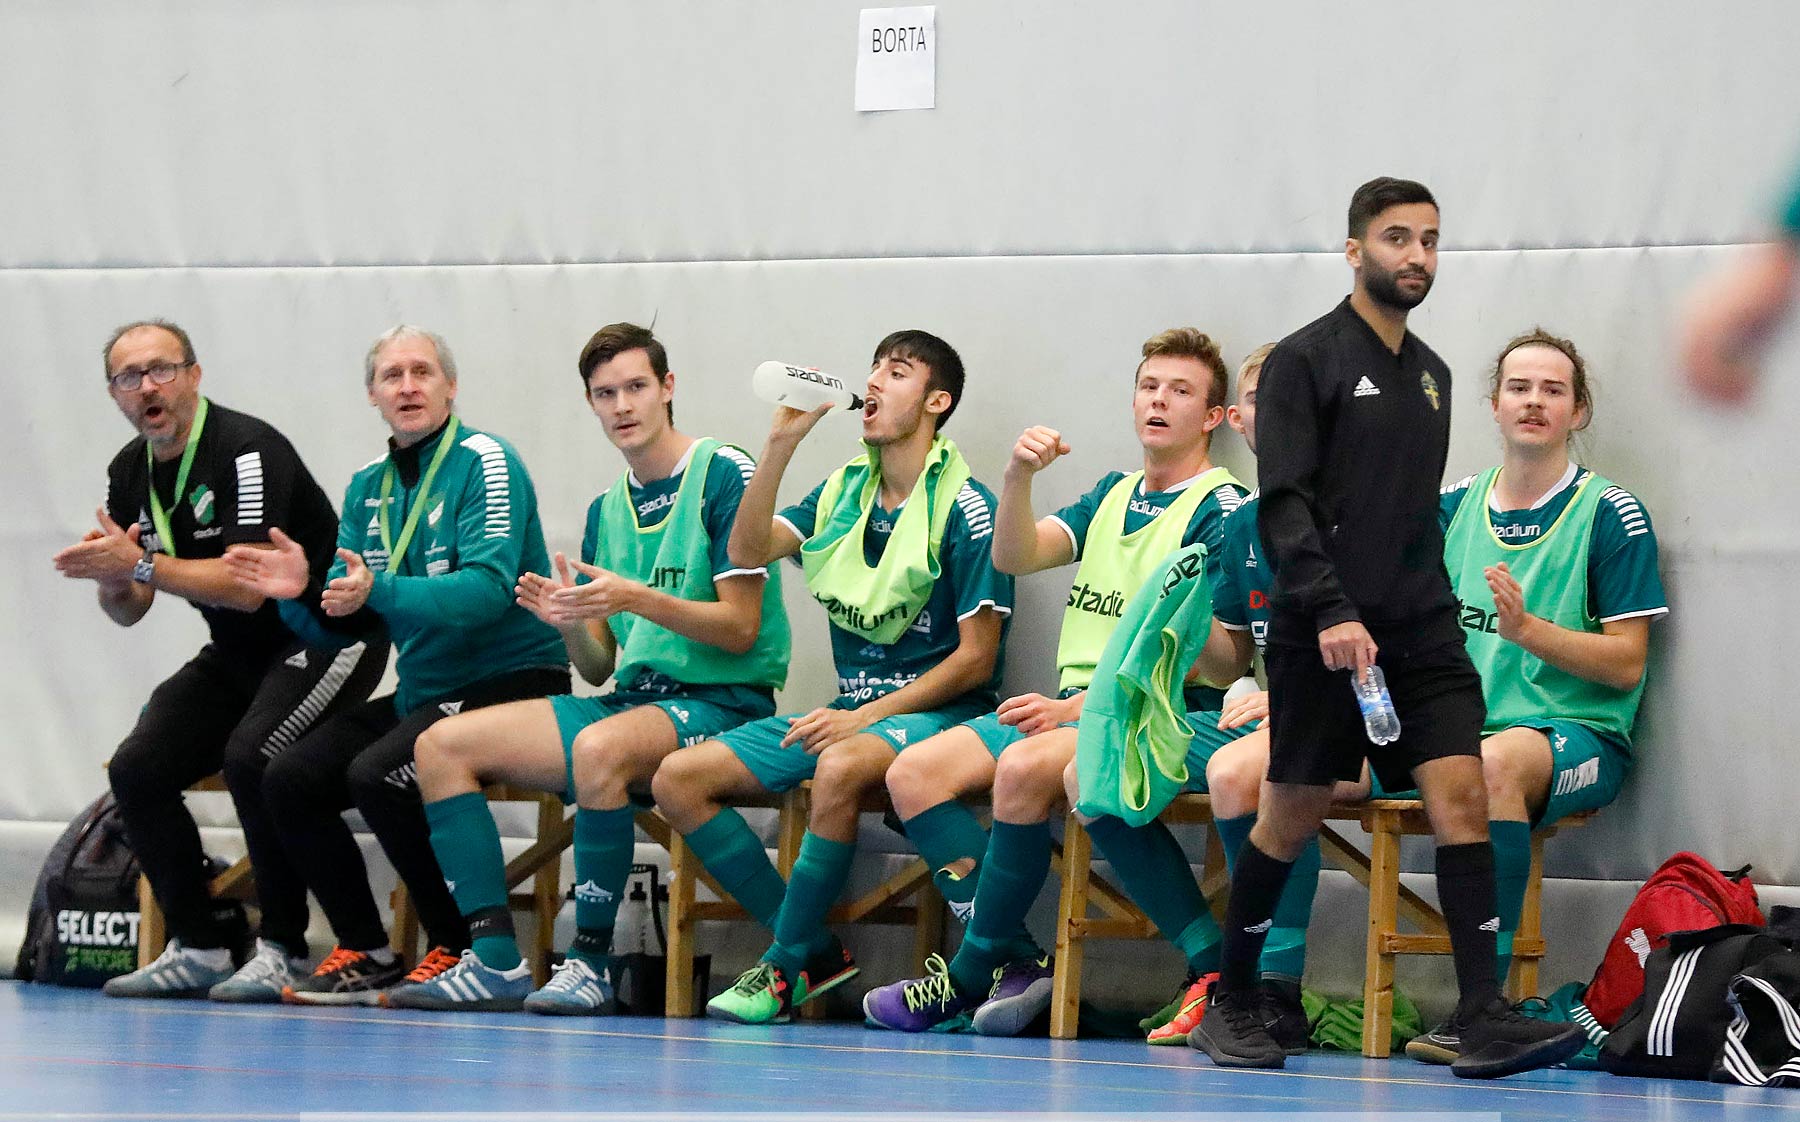 Skövde Futsalcup 2019 Herrar Vårgårda IK-Våmbs IF,herr,Arena Skövde,Skövde,Sverige,Futsal,,2019,227293